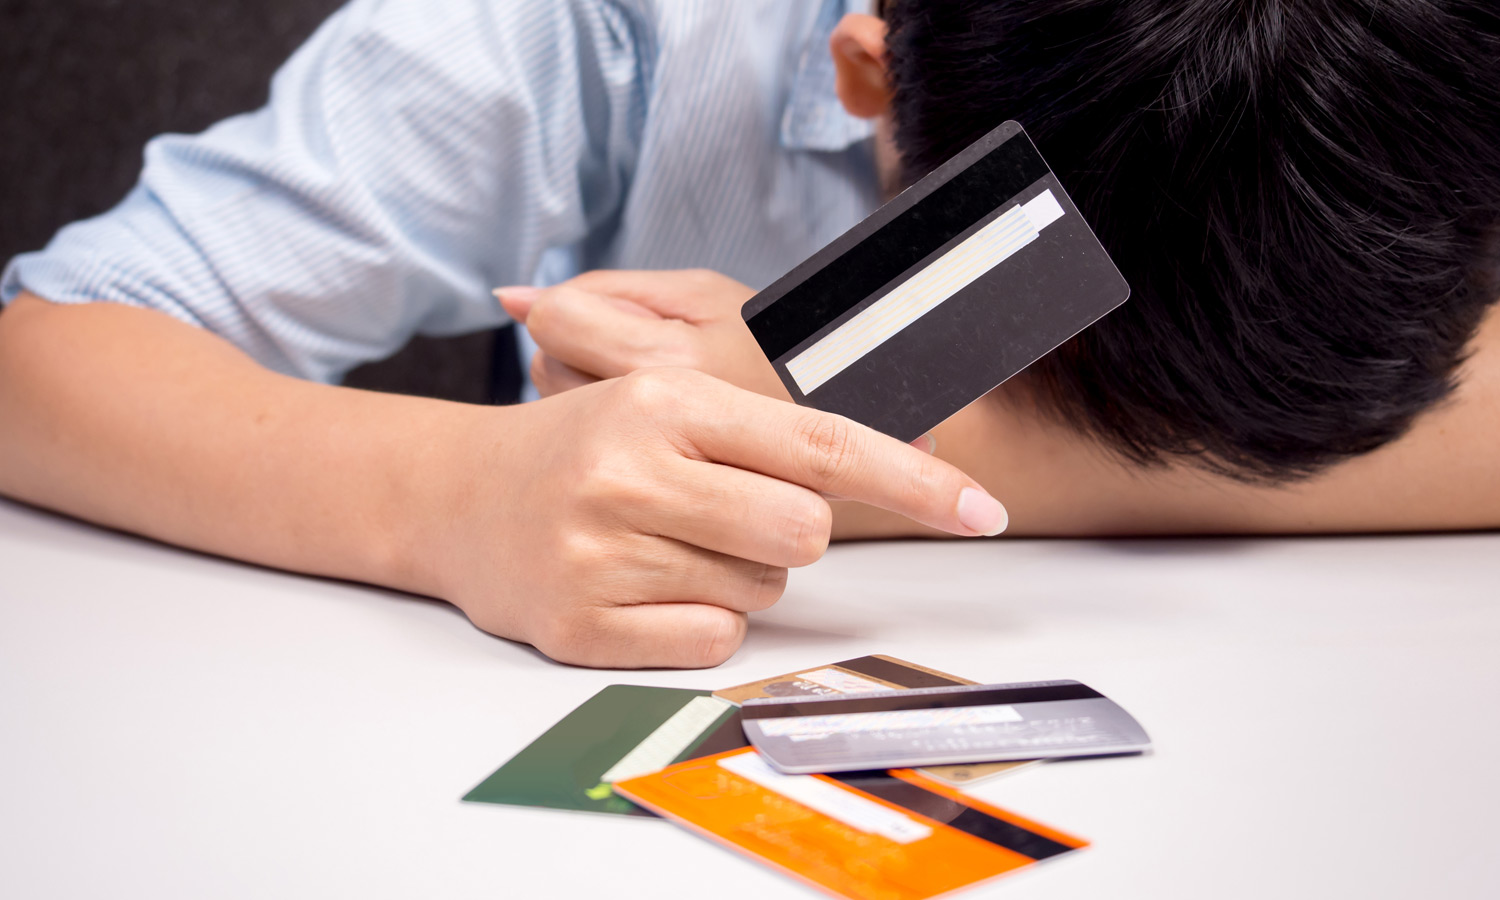 4 วิธีจัดการสินเชื่อปิดบัตรเครดิต ปลดหนี้ง่าย เห็นผลทันใจ | Scb